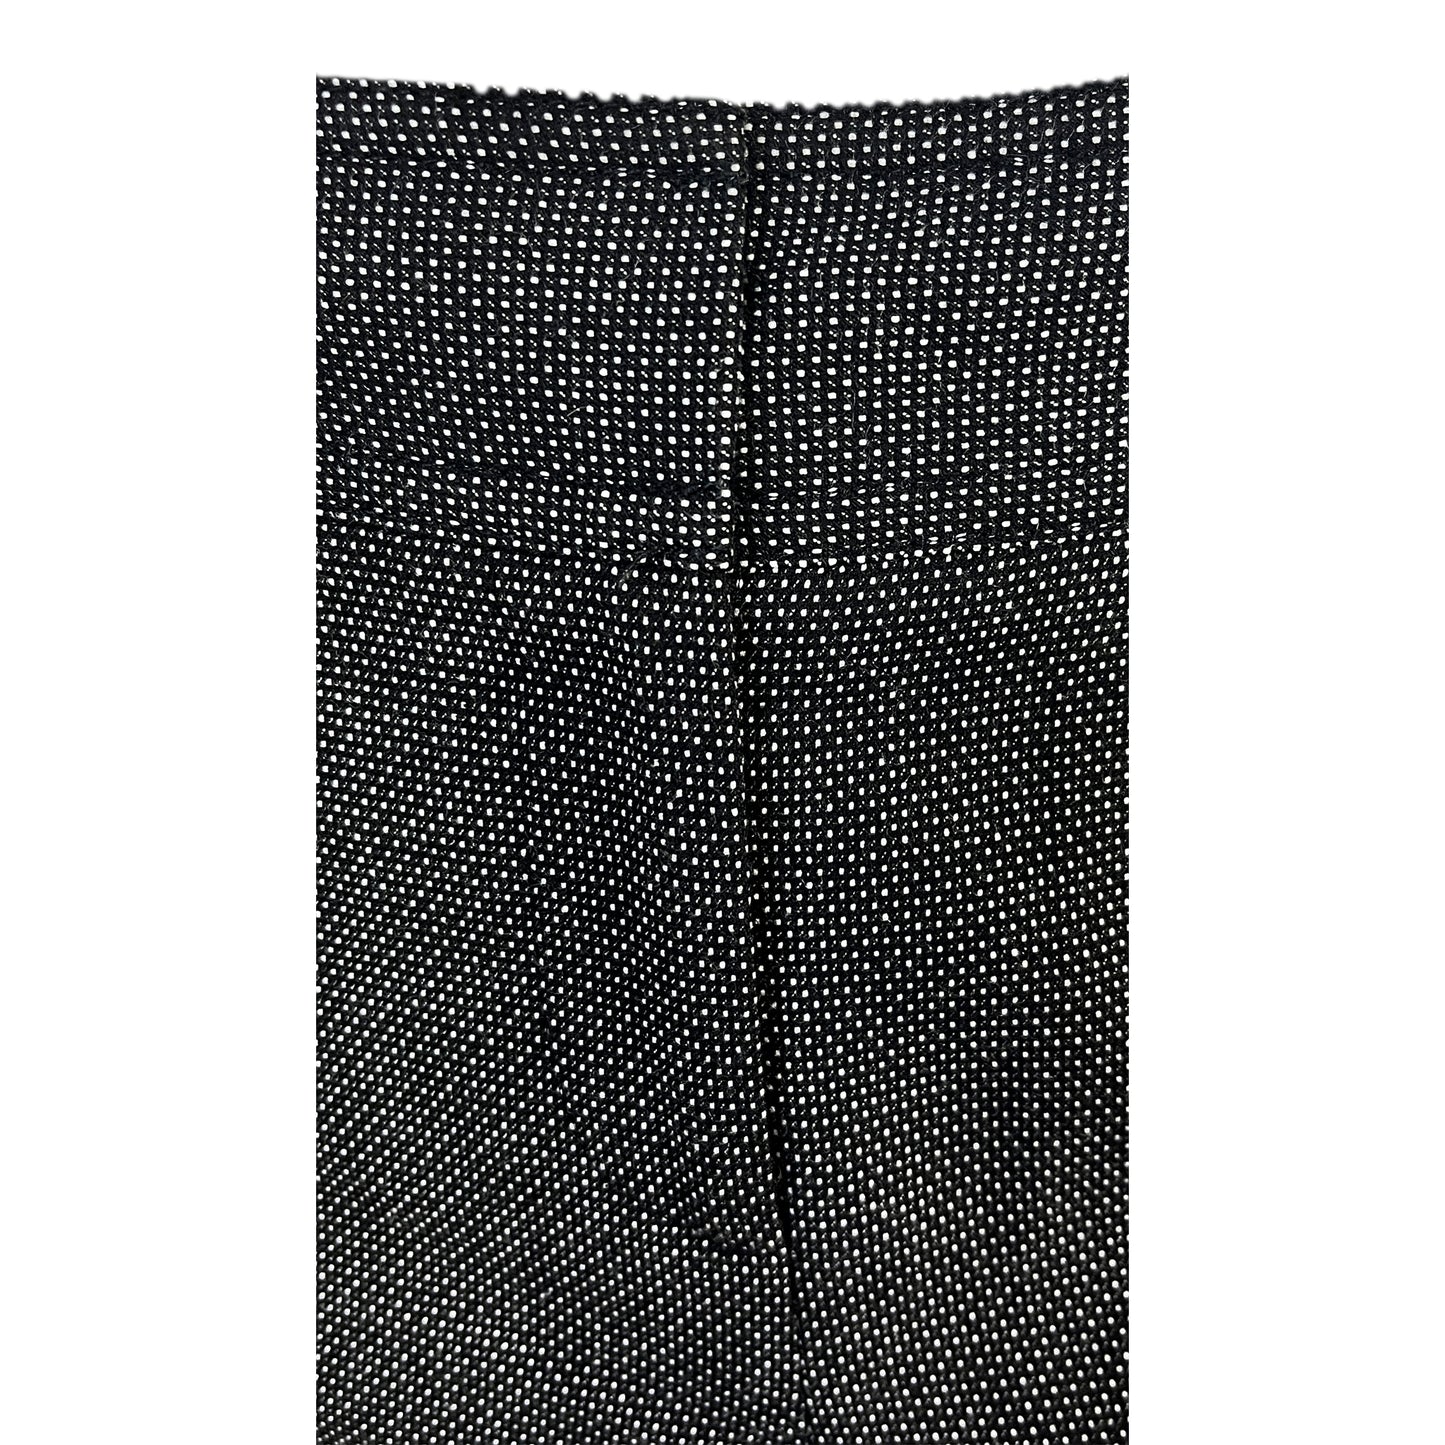 Ann Taylor Dress Pants Knit Black, White Size 4 SKU 000372-2